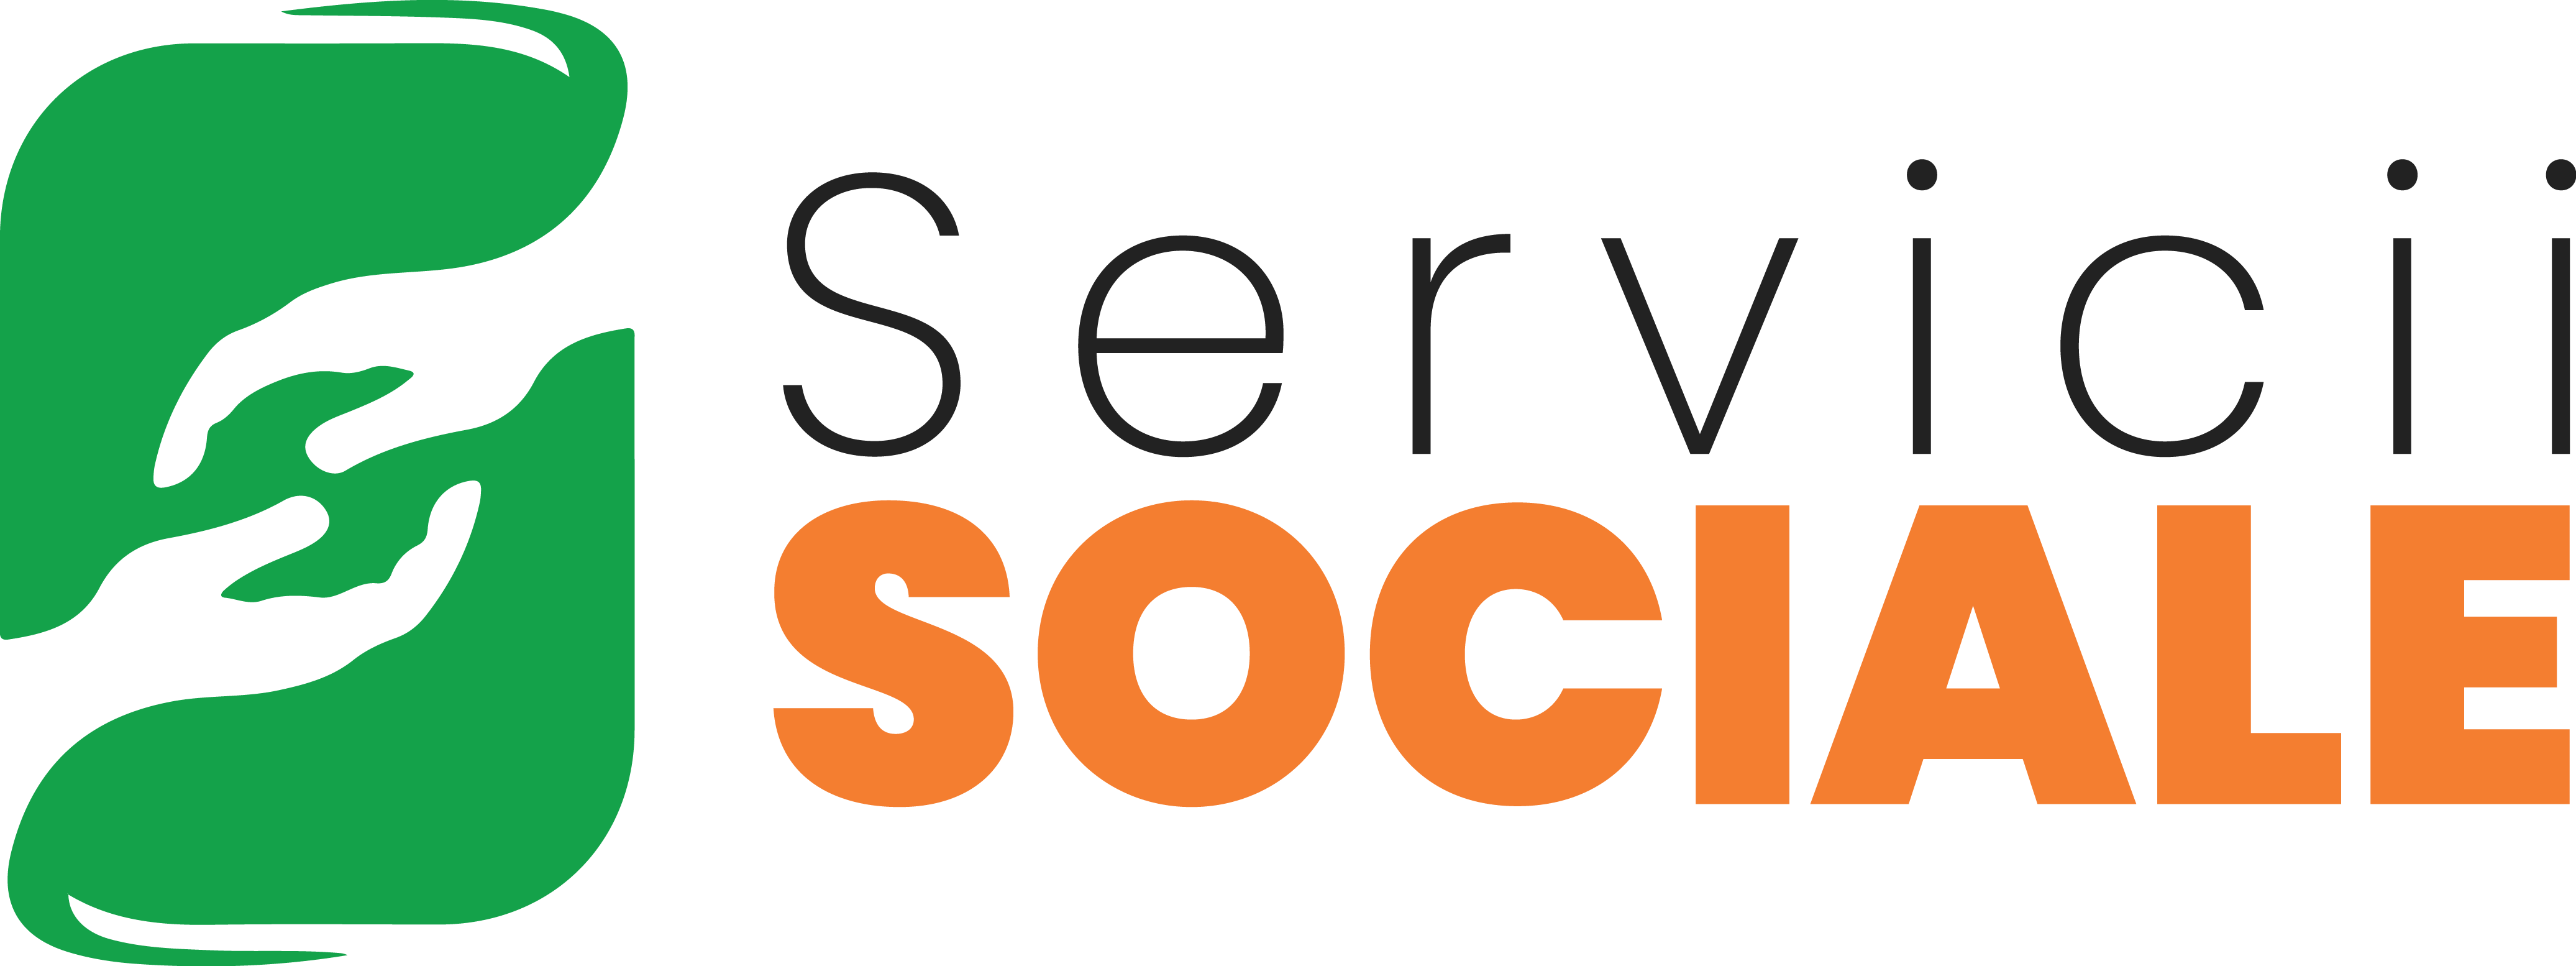 Servicii Sociale